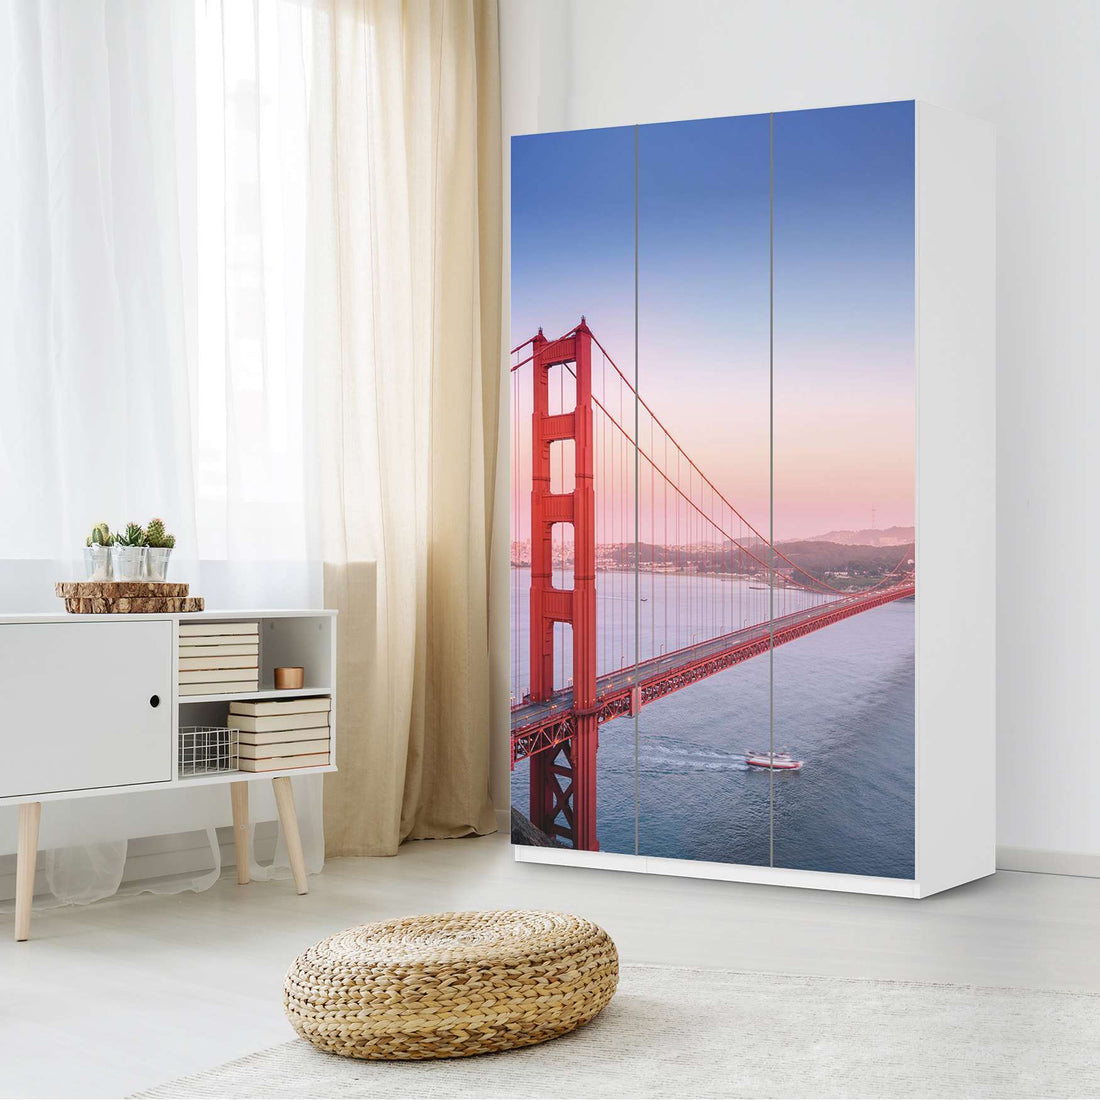 Selbstklebende Folie Golden Gate - IKEA Pax Schrank 236 cm Höhe - 3 Türen - Schlafzimmer